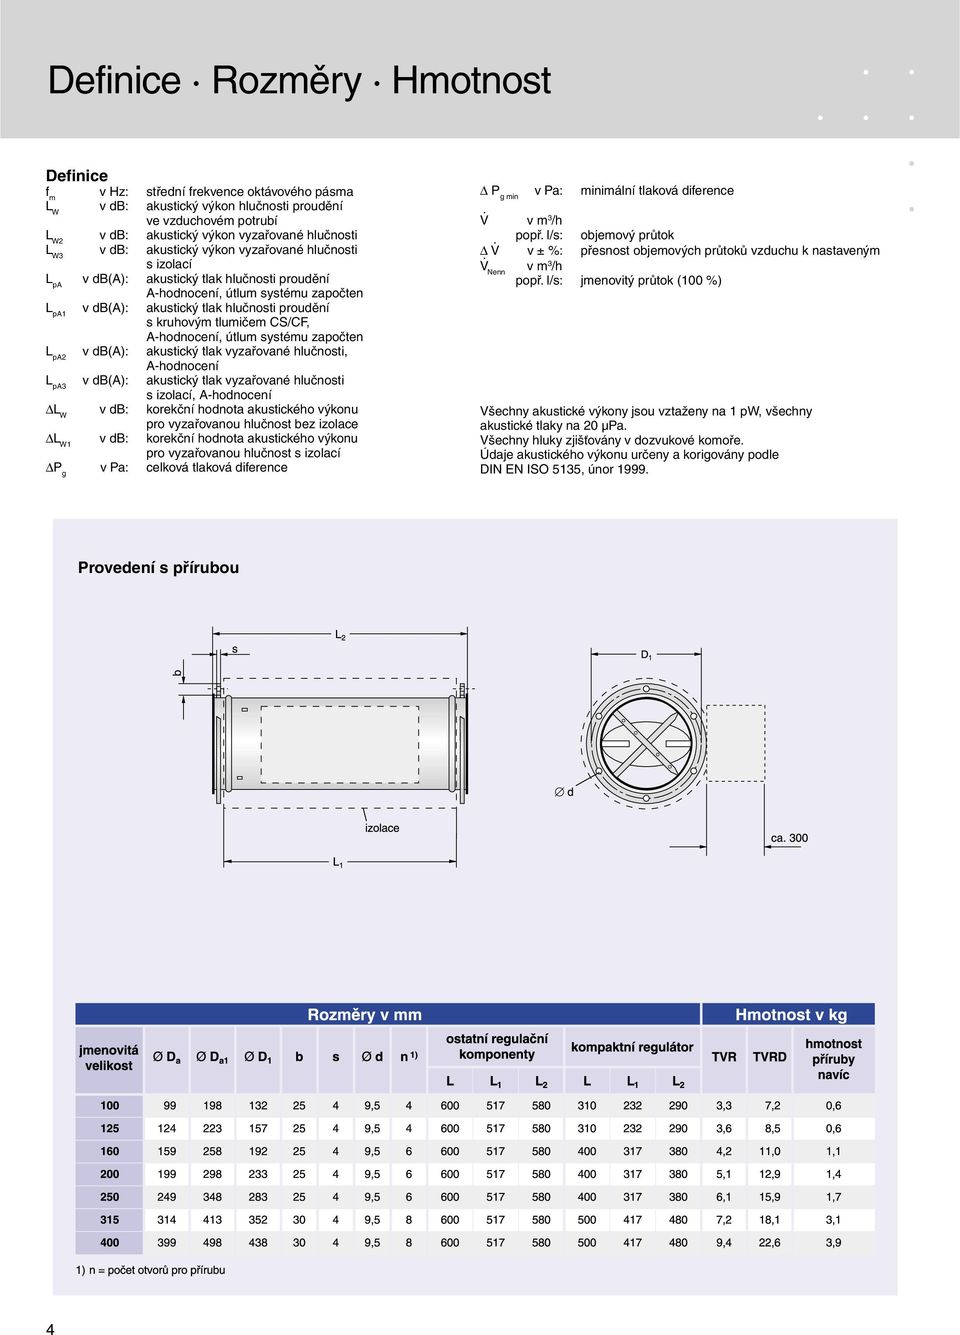 tlumičem CS/CF, A-hodnocení, útlum systému započten L pa2 v db(a): akustický tlak vyzařované hlučnosti, A-hodnocení L pa3 v db(a): akustický tlak vyzařované hlučnosti s izolací, A-hodnocení L W v db: